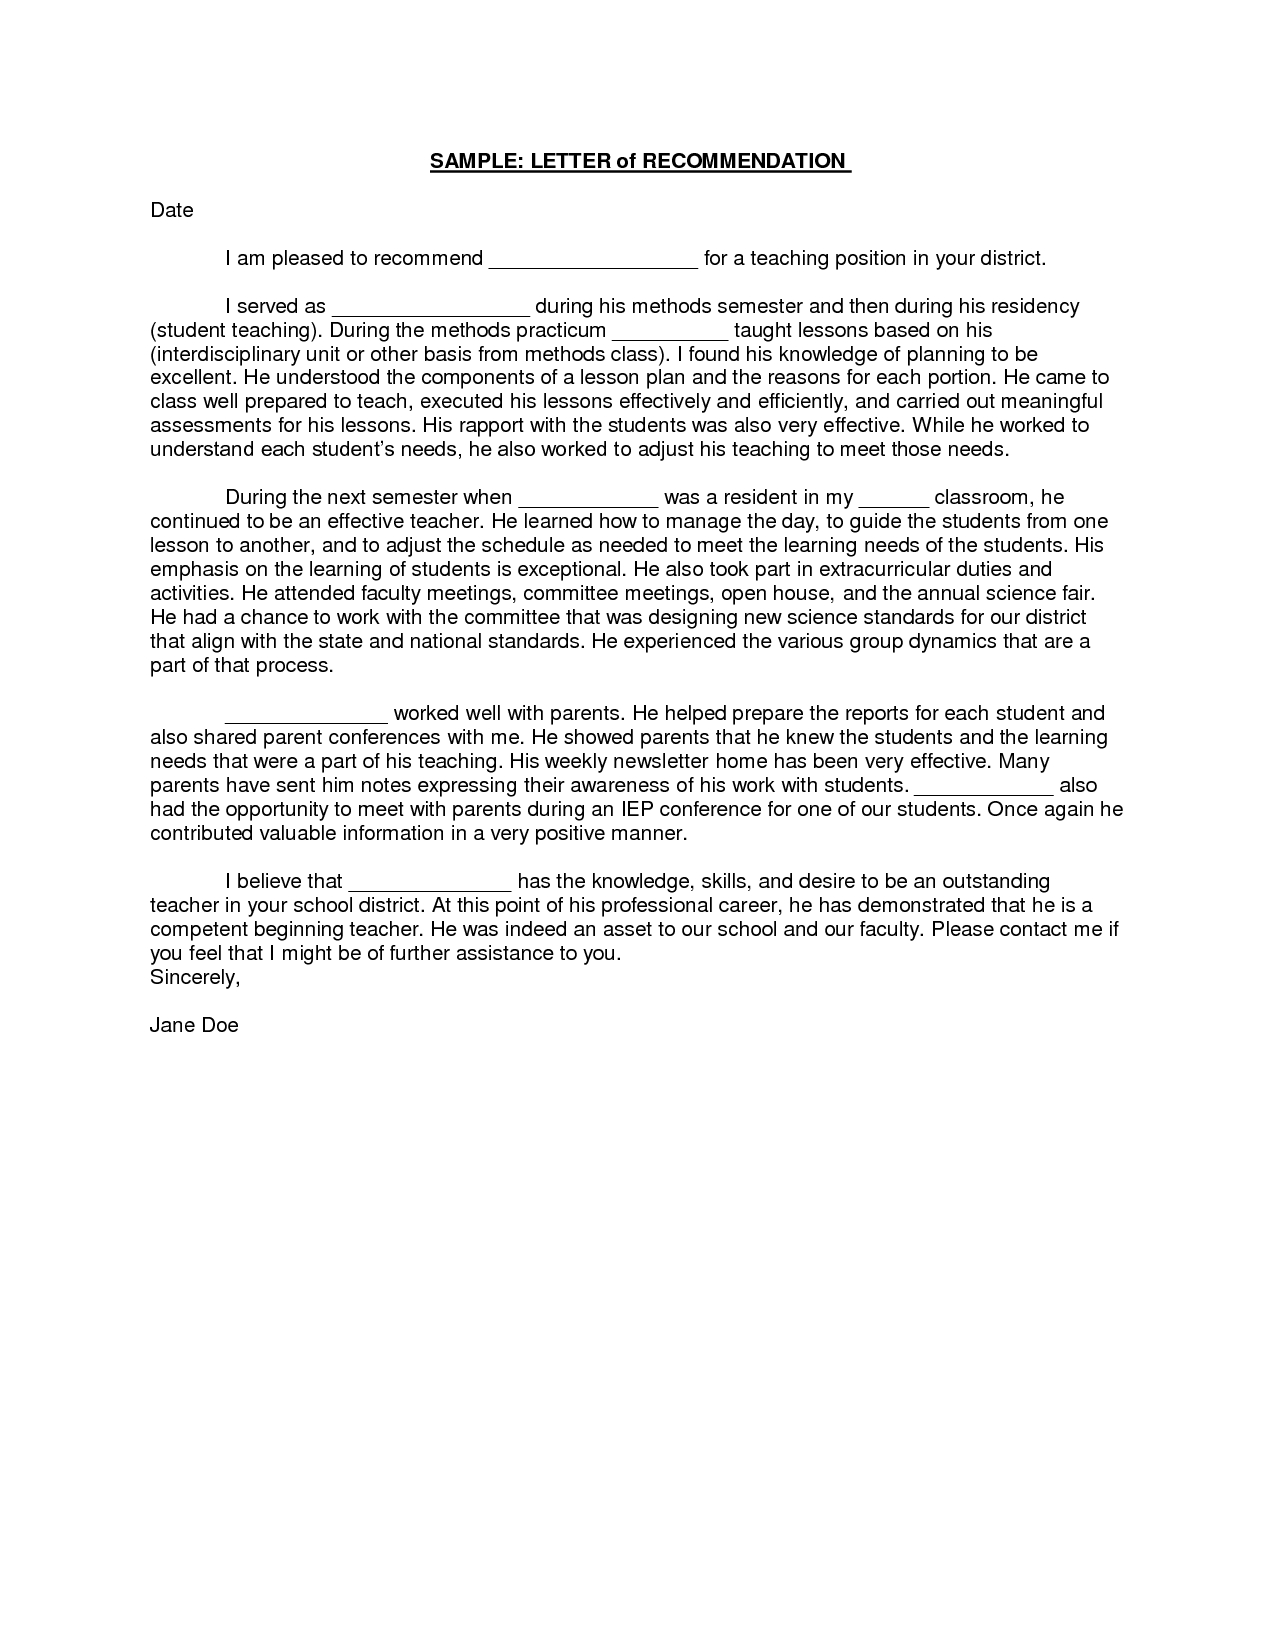 Teacher Reference Letter Template - Sample Student Teacher Re Mendation Letters V9nqmvof